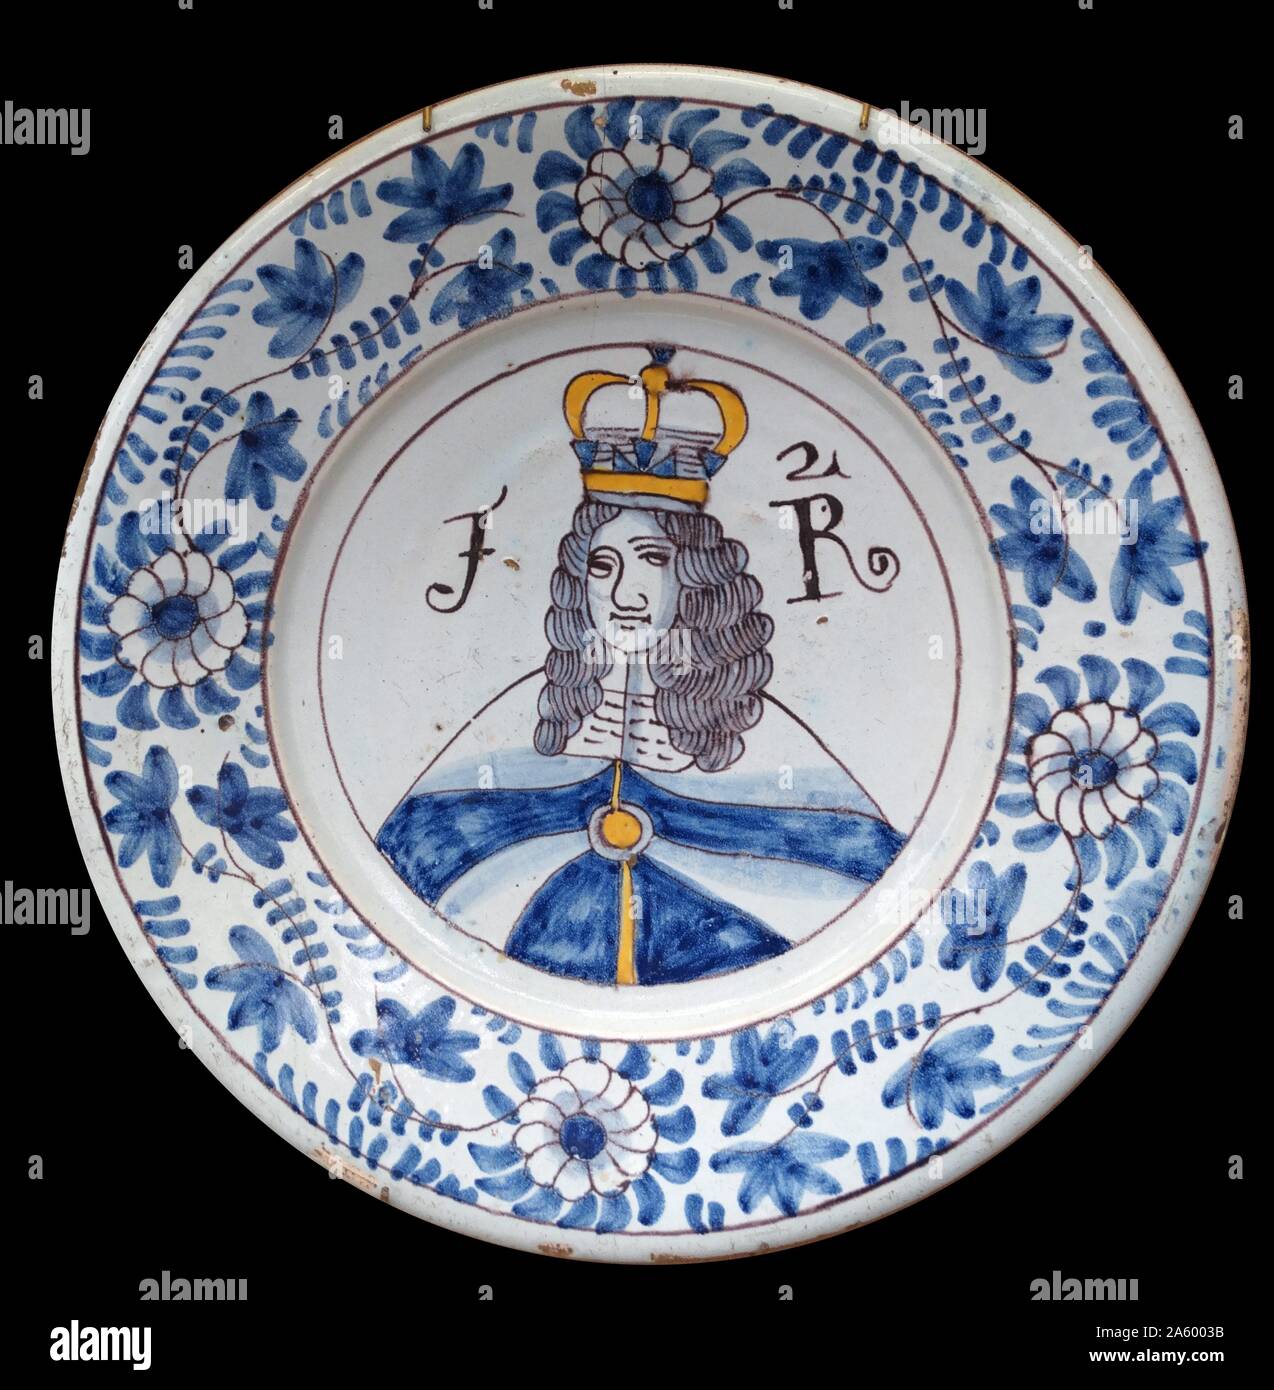 Retrato del Rey Jaime II (1633-1701) rey de Inglaterra e Irlanda como Jaime II y el rey de Escocia como Jacobo VII en un plato. Por Arnold Taylor legado. Fecha Siglo xvii Foto de stock